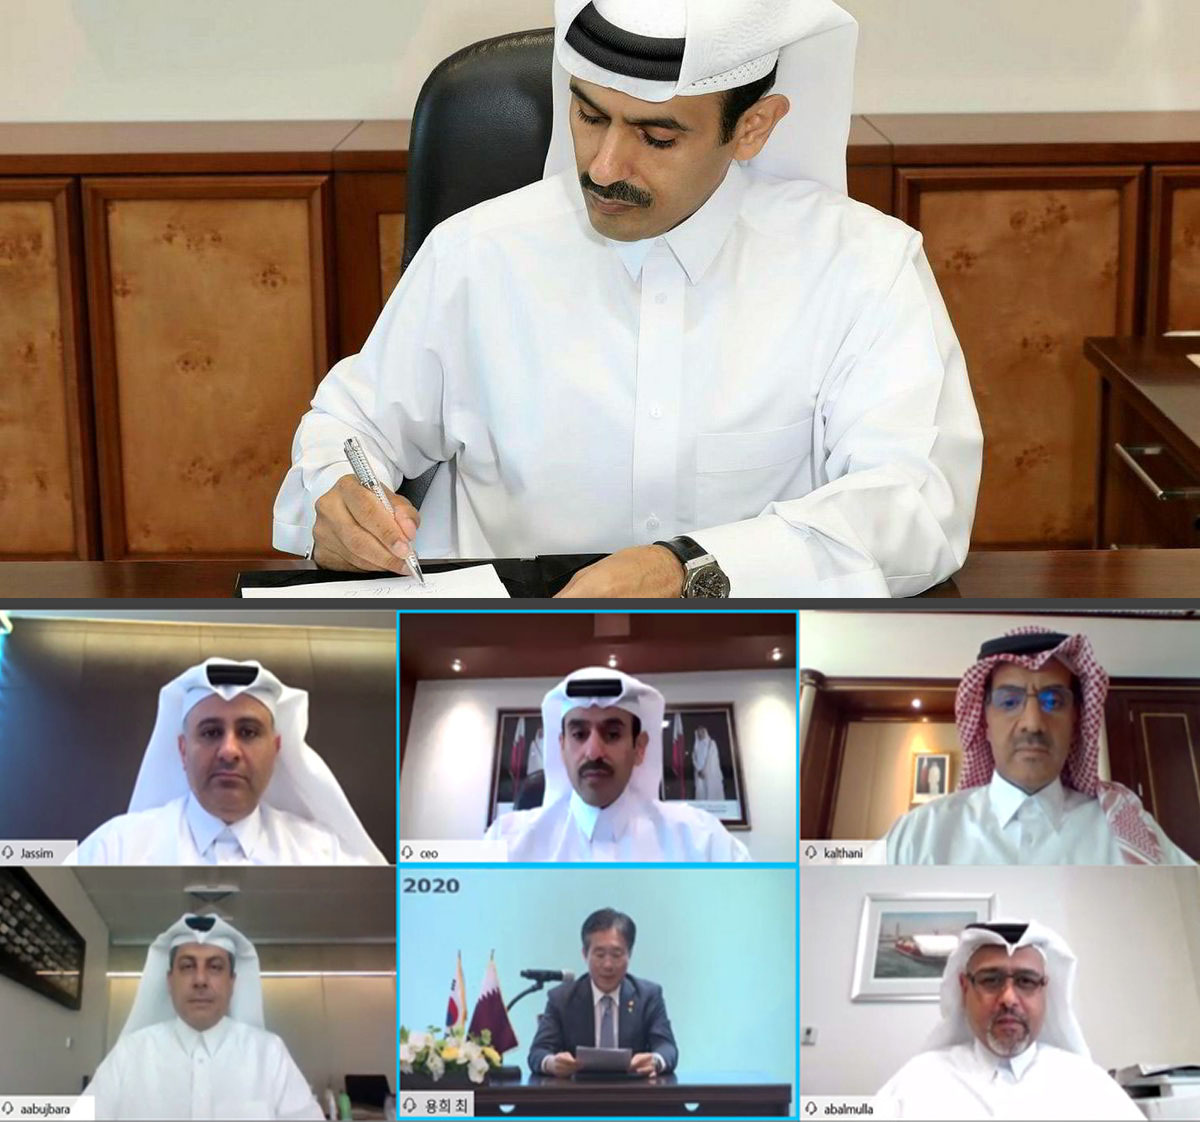 Podpisanie umowy między Qatar Petroleum a stoczniami południowo-koreańskimi dot. rezerwacji mocy produkcyjnych na ponad 100 statków